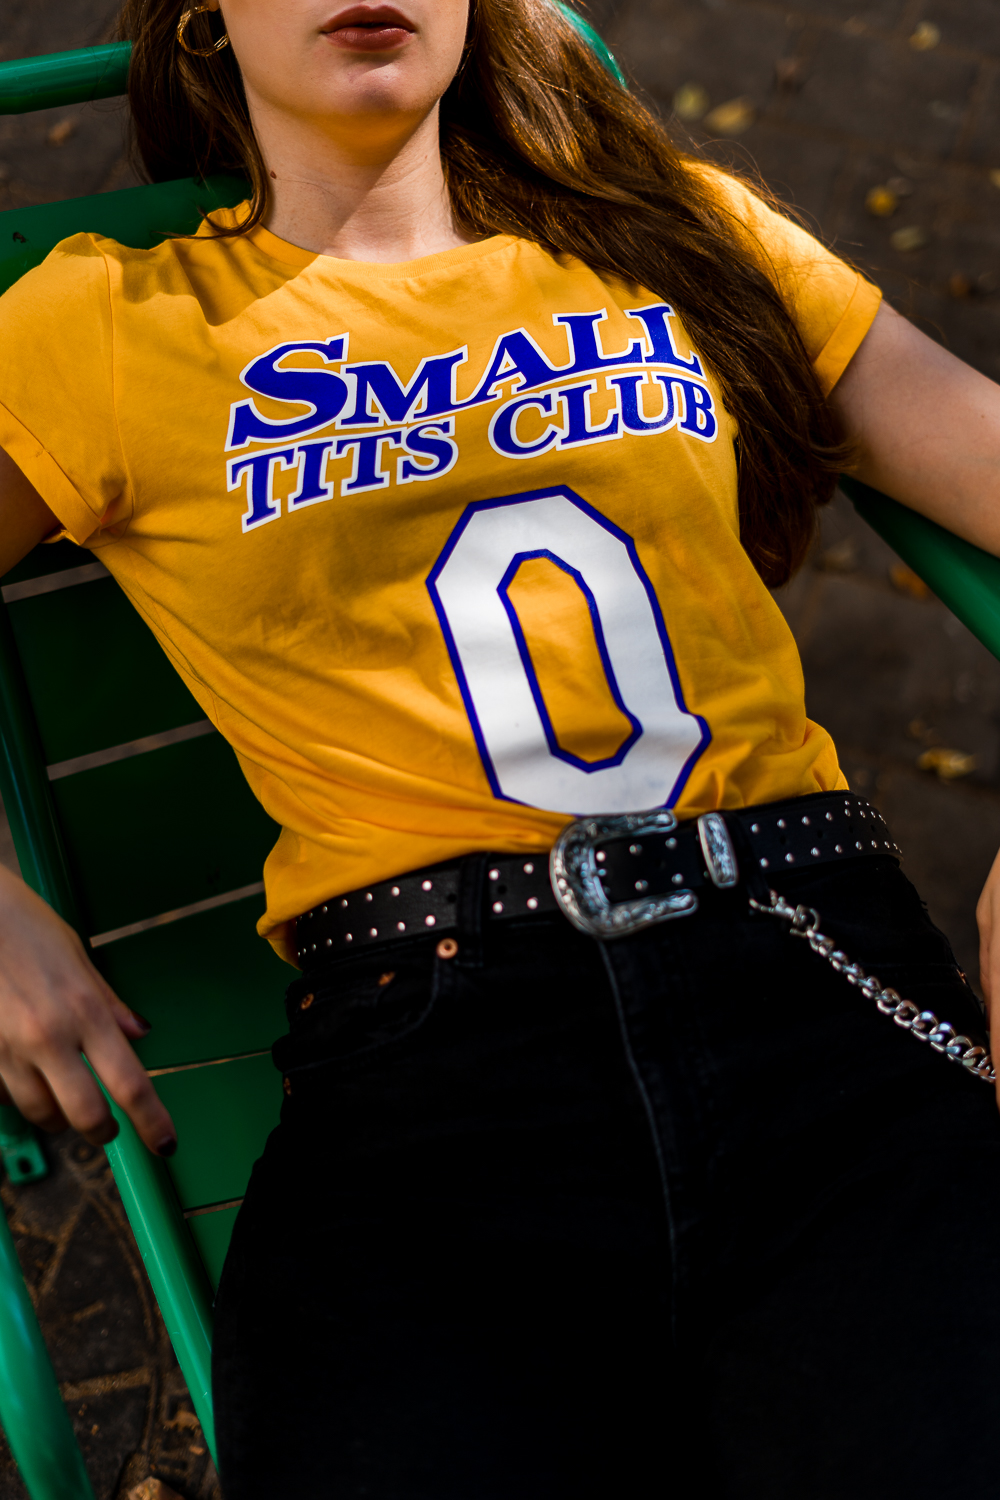 Small Tits Club Shirt-Besser als Sex-Ines Anioli-High Waist Jeans-High Waist Jeans kombinieren-Modeblog Berlin-andysparkles